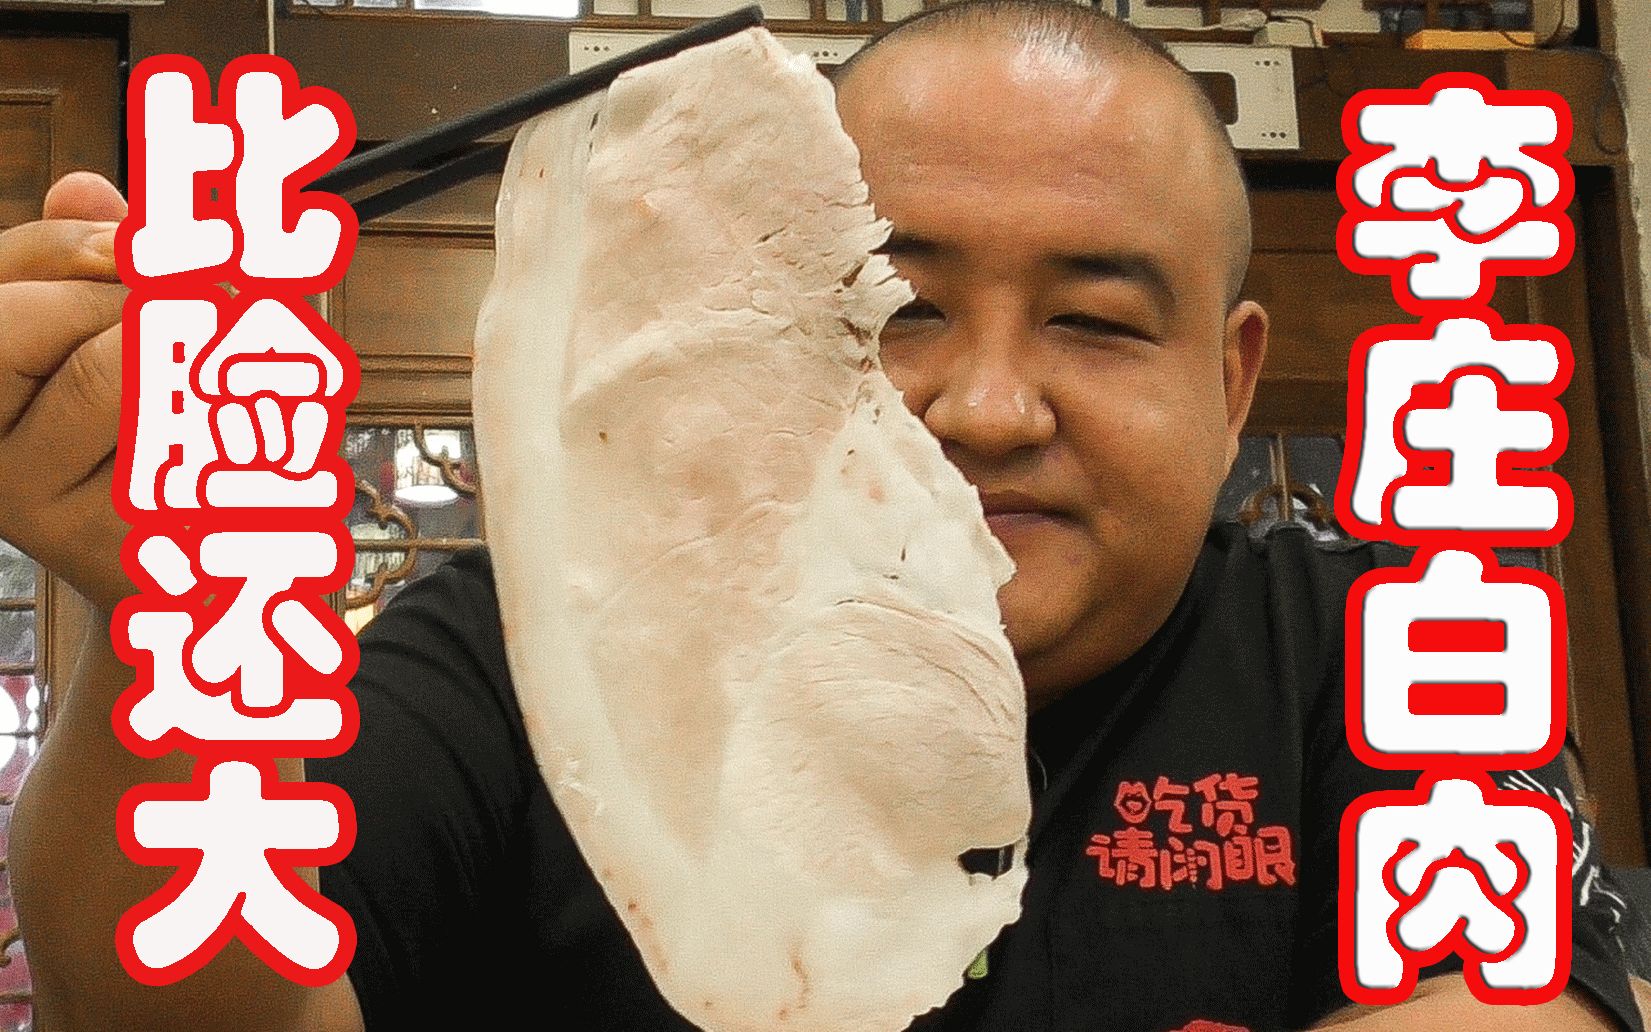 【李庄白肉】30cm长的白肉？比脸大！比纸薄！肥瘦相间，刀功一绝！